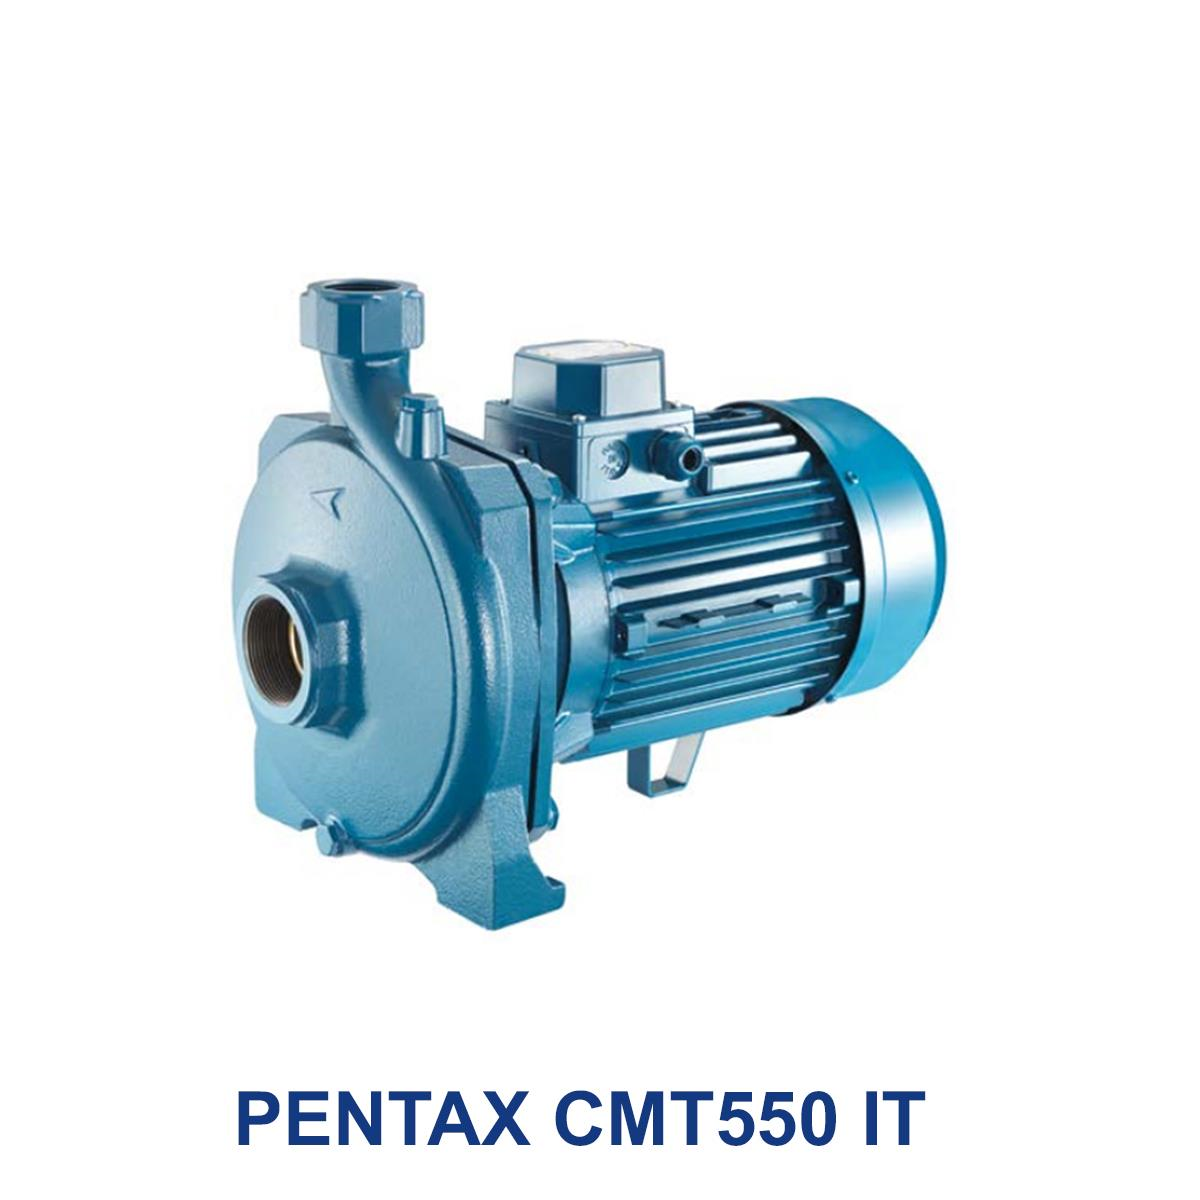 PENTAX-CMT550-IT